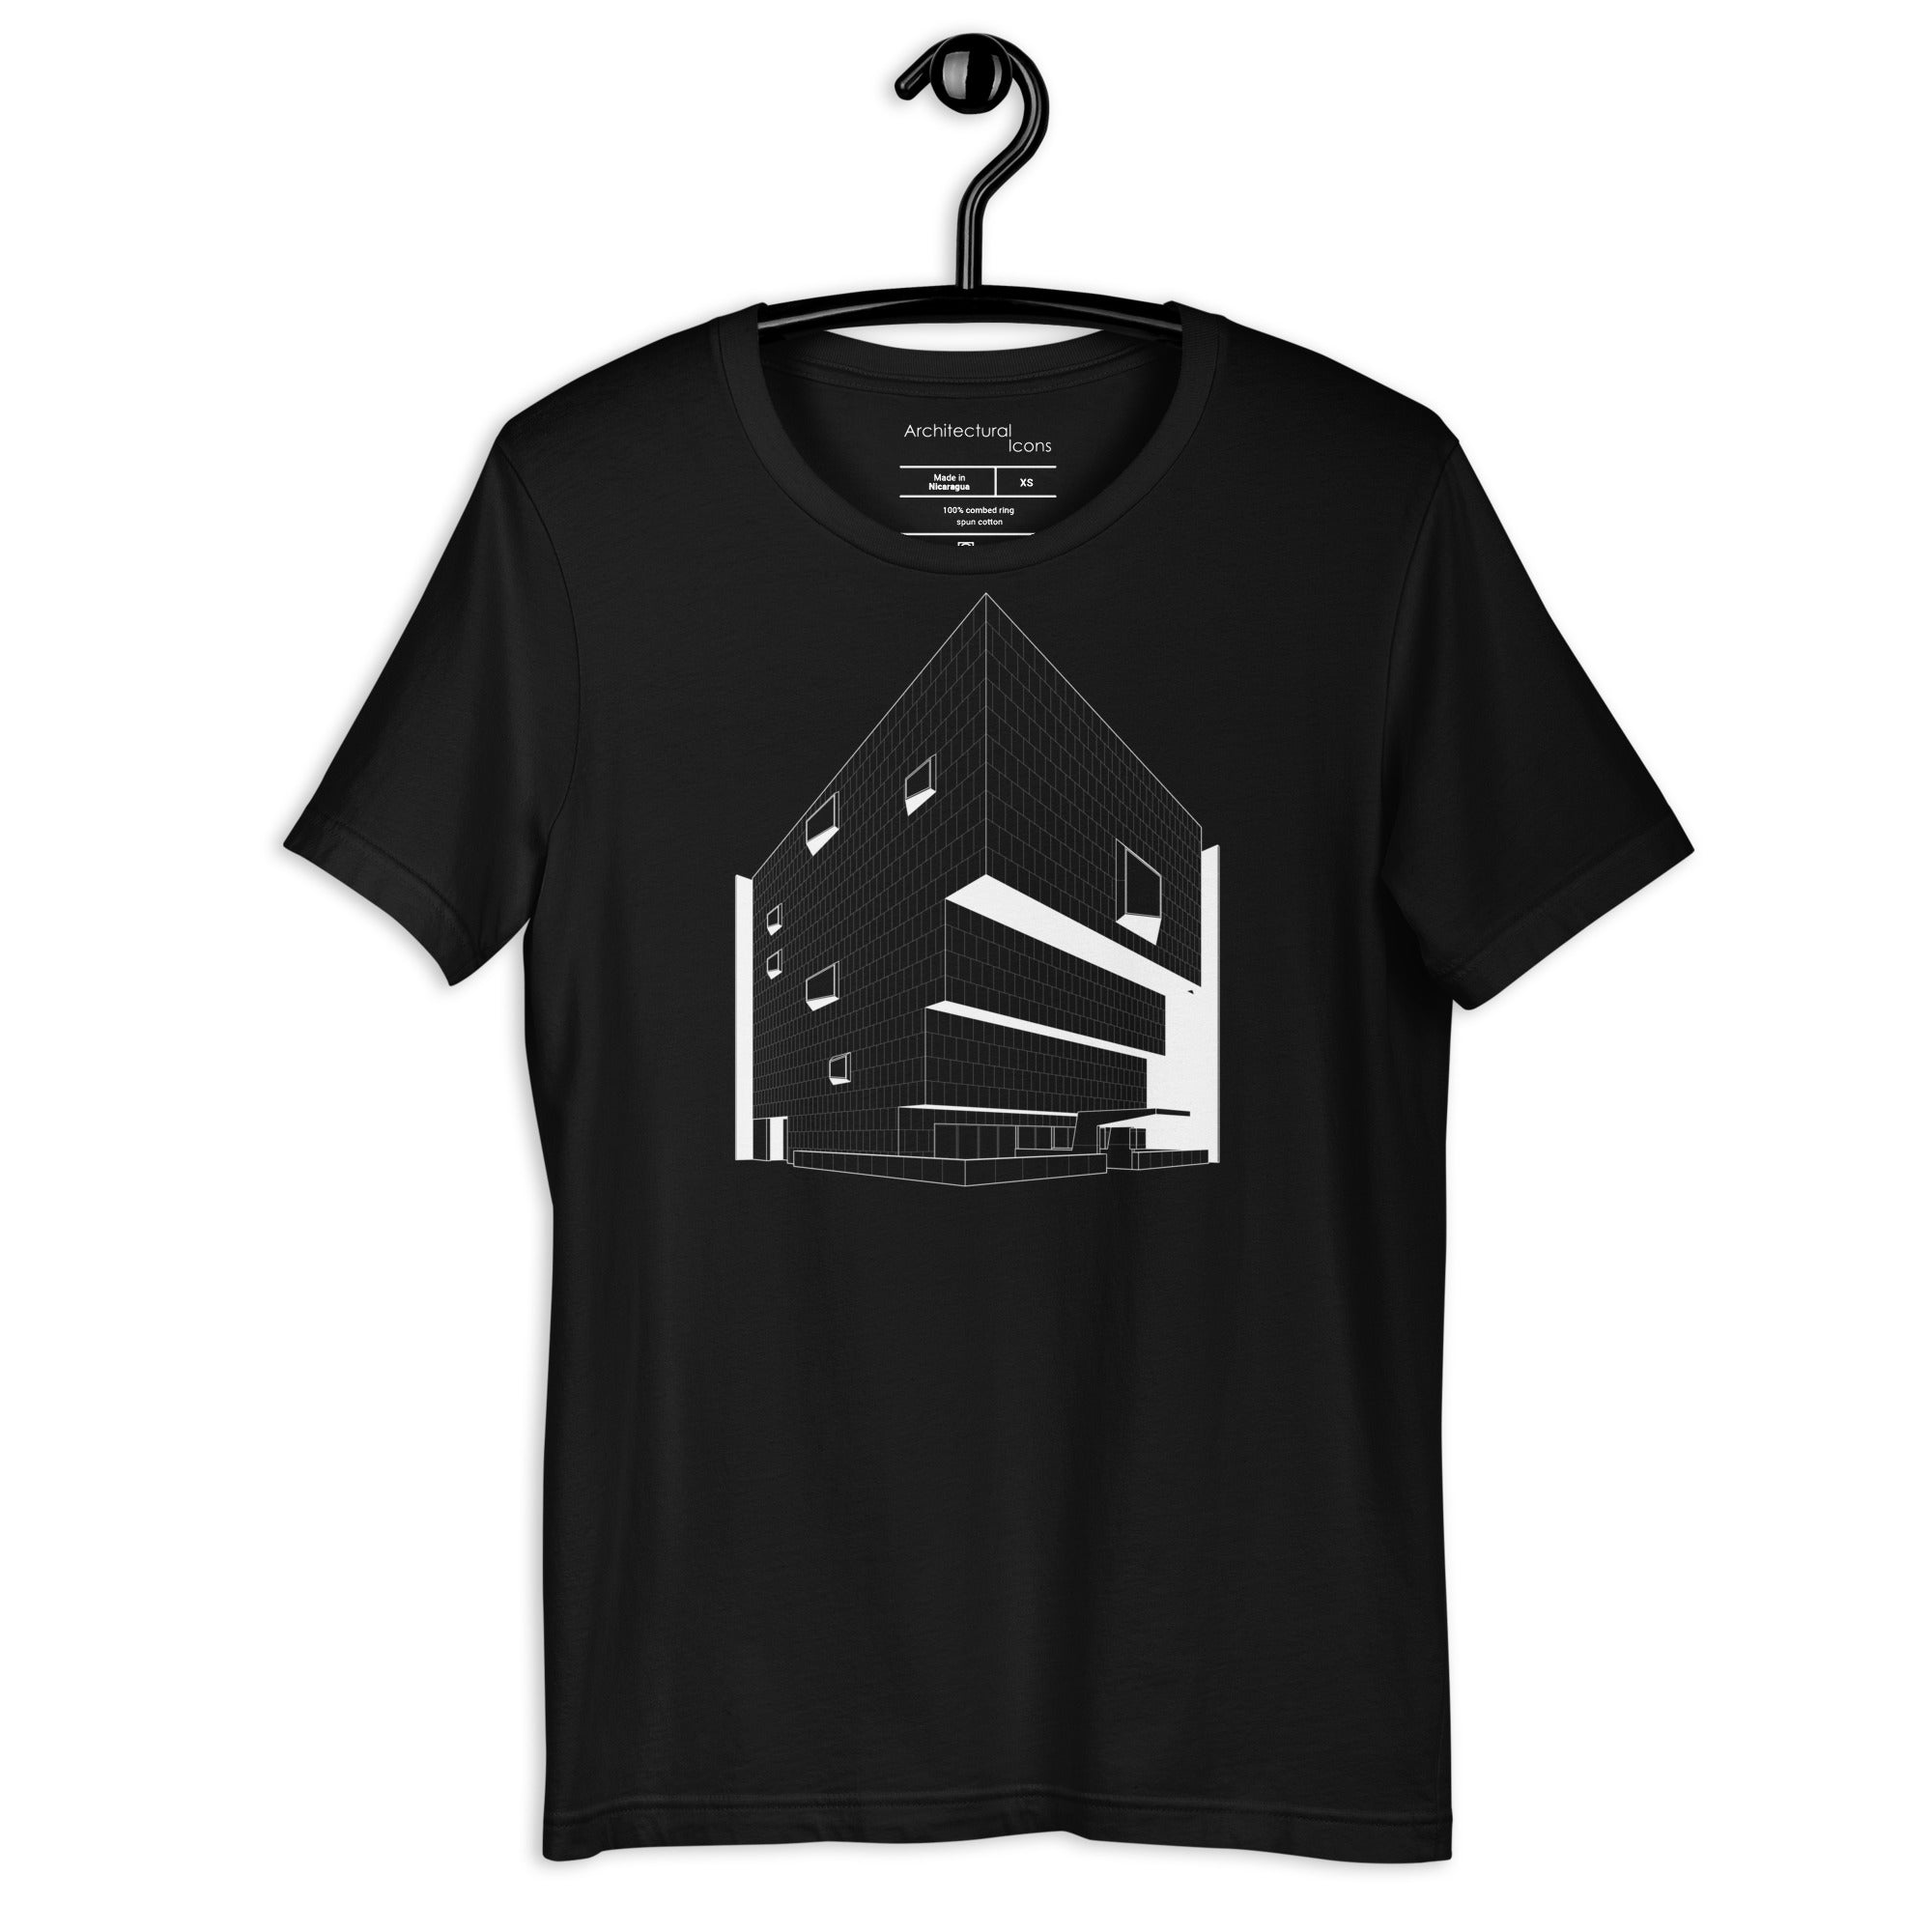 The Whitney (945 Madison Avenue) Unisex T-Shirt